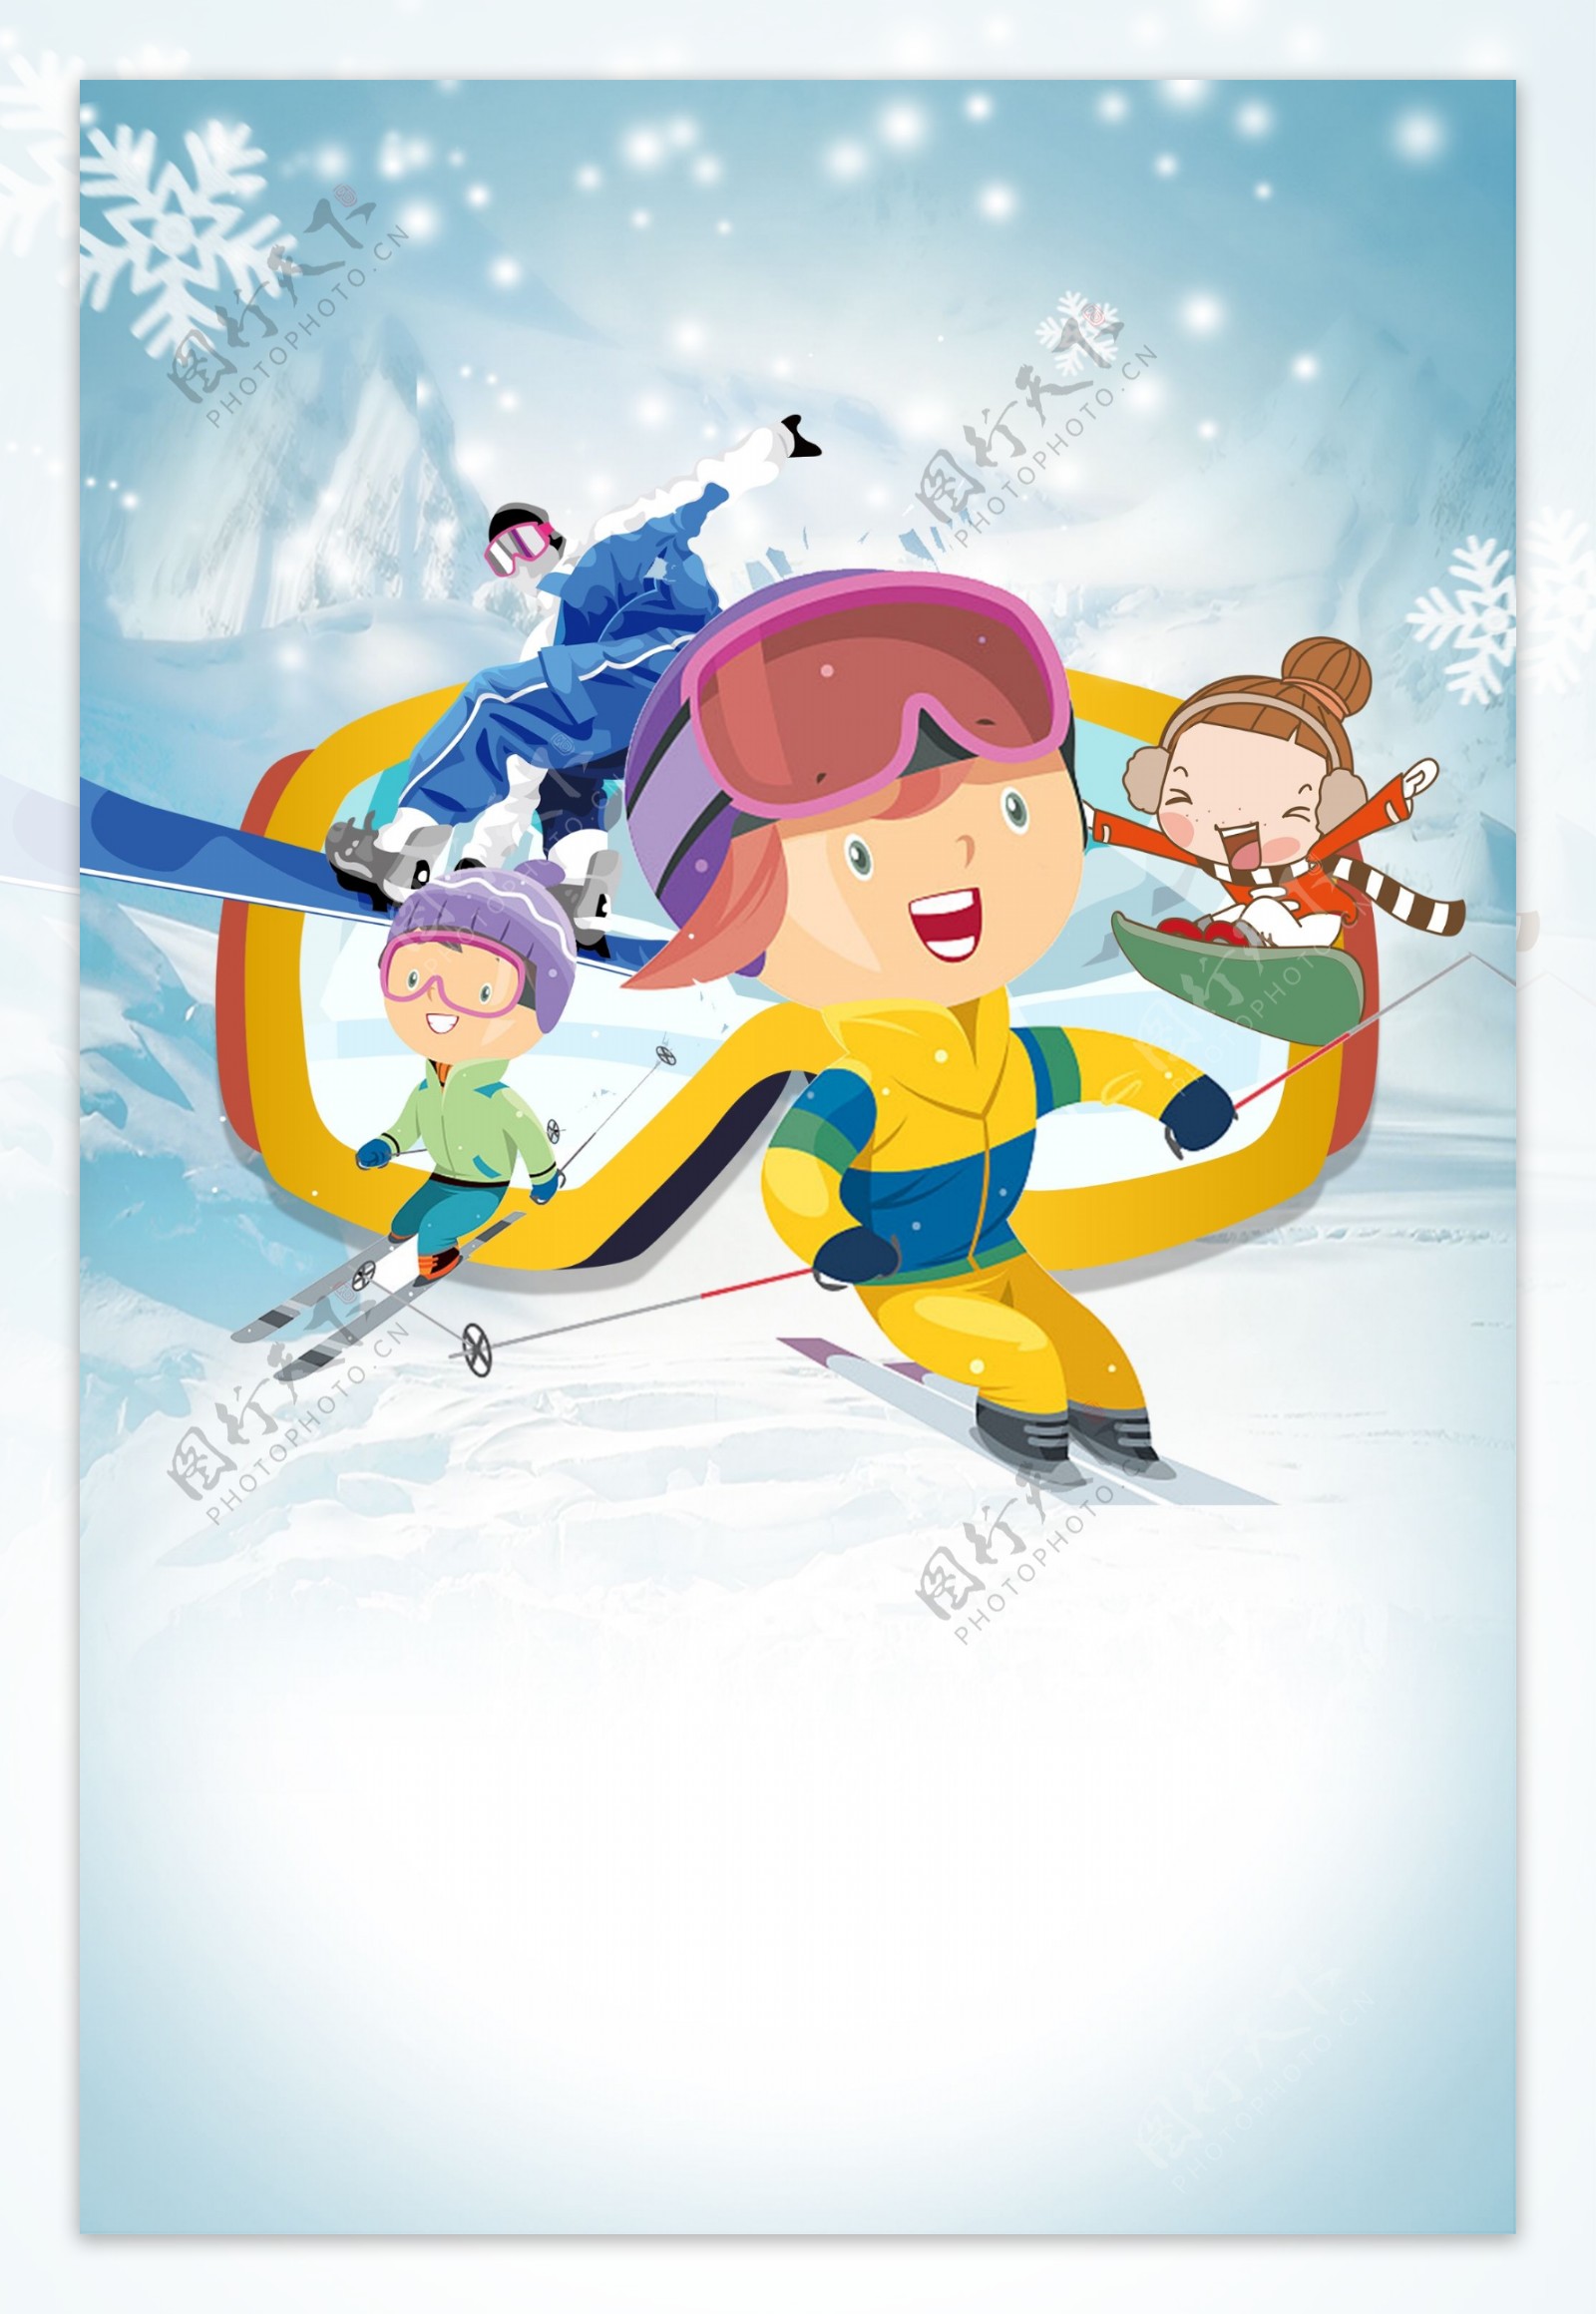 冬日滑雪运动插画背景